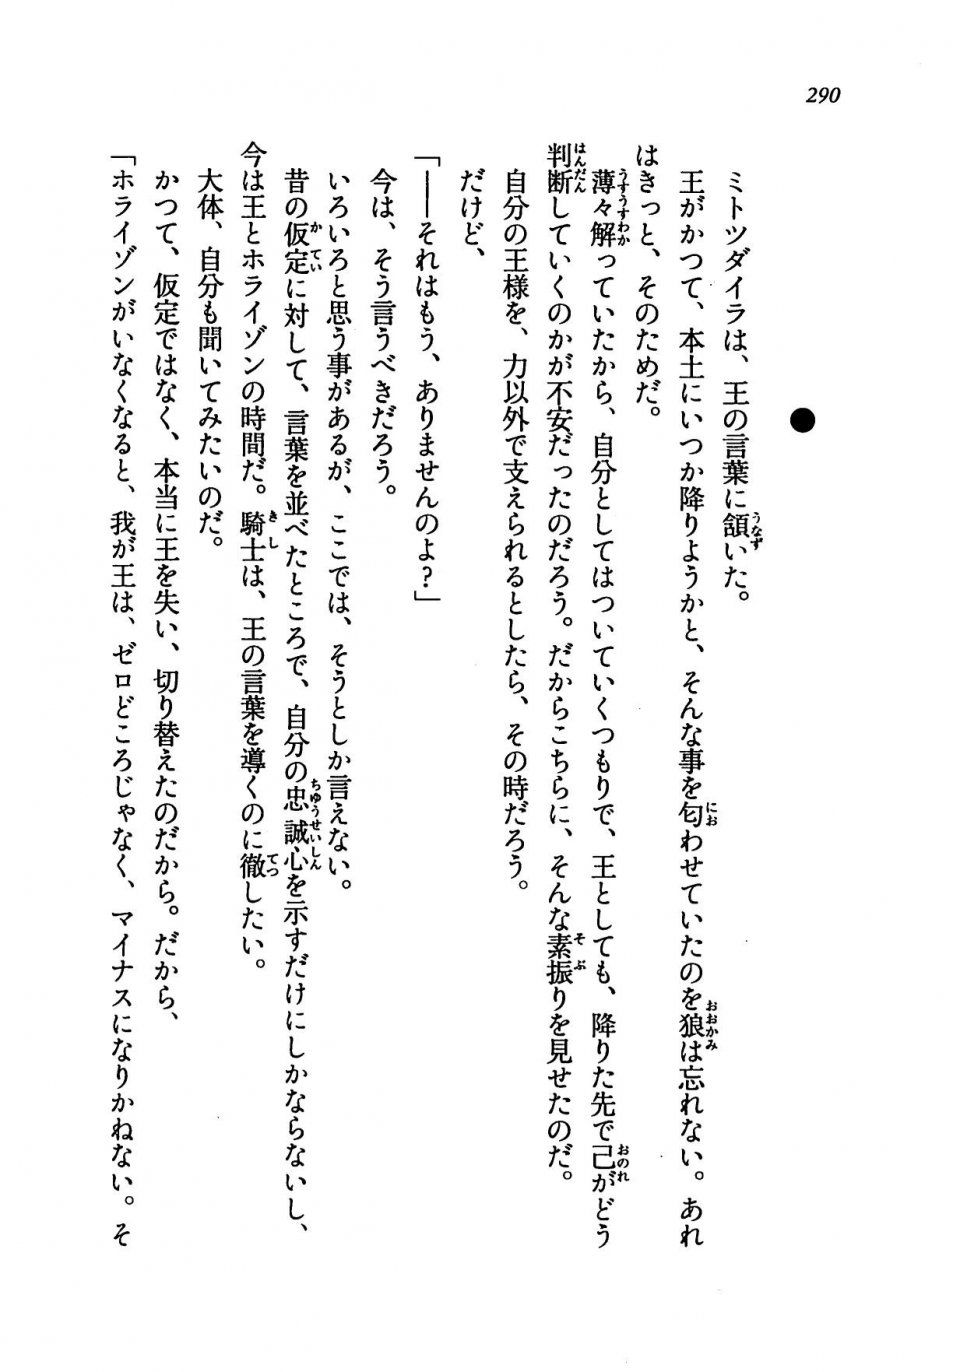 Kyoukai Senjou no Horizon LN Vol 19(8A) - Photo #290